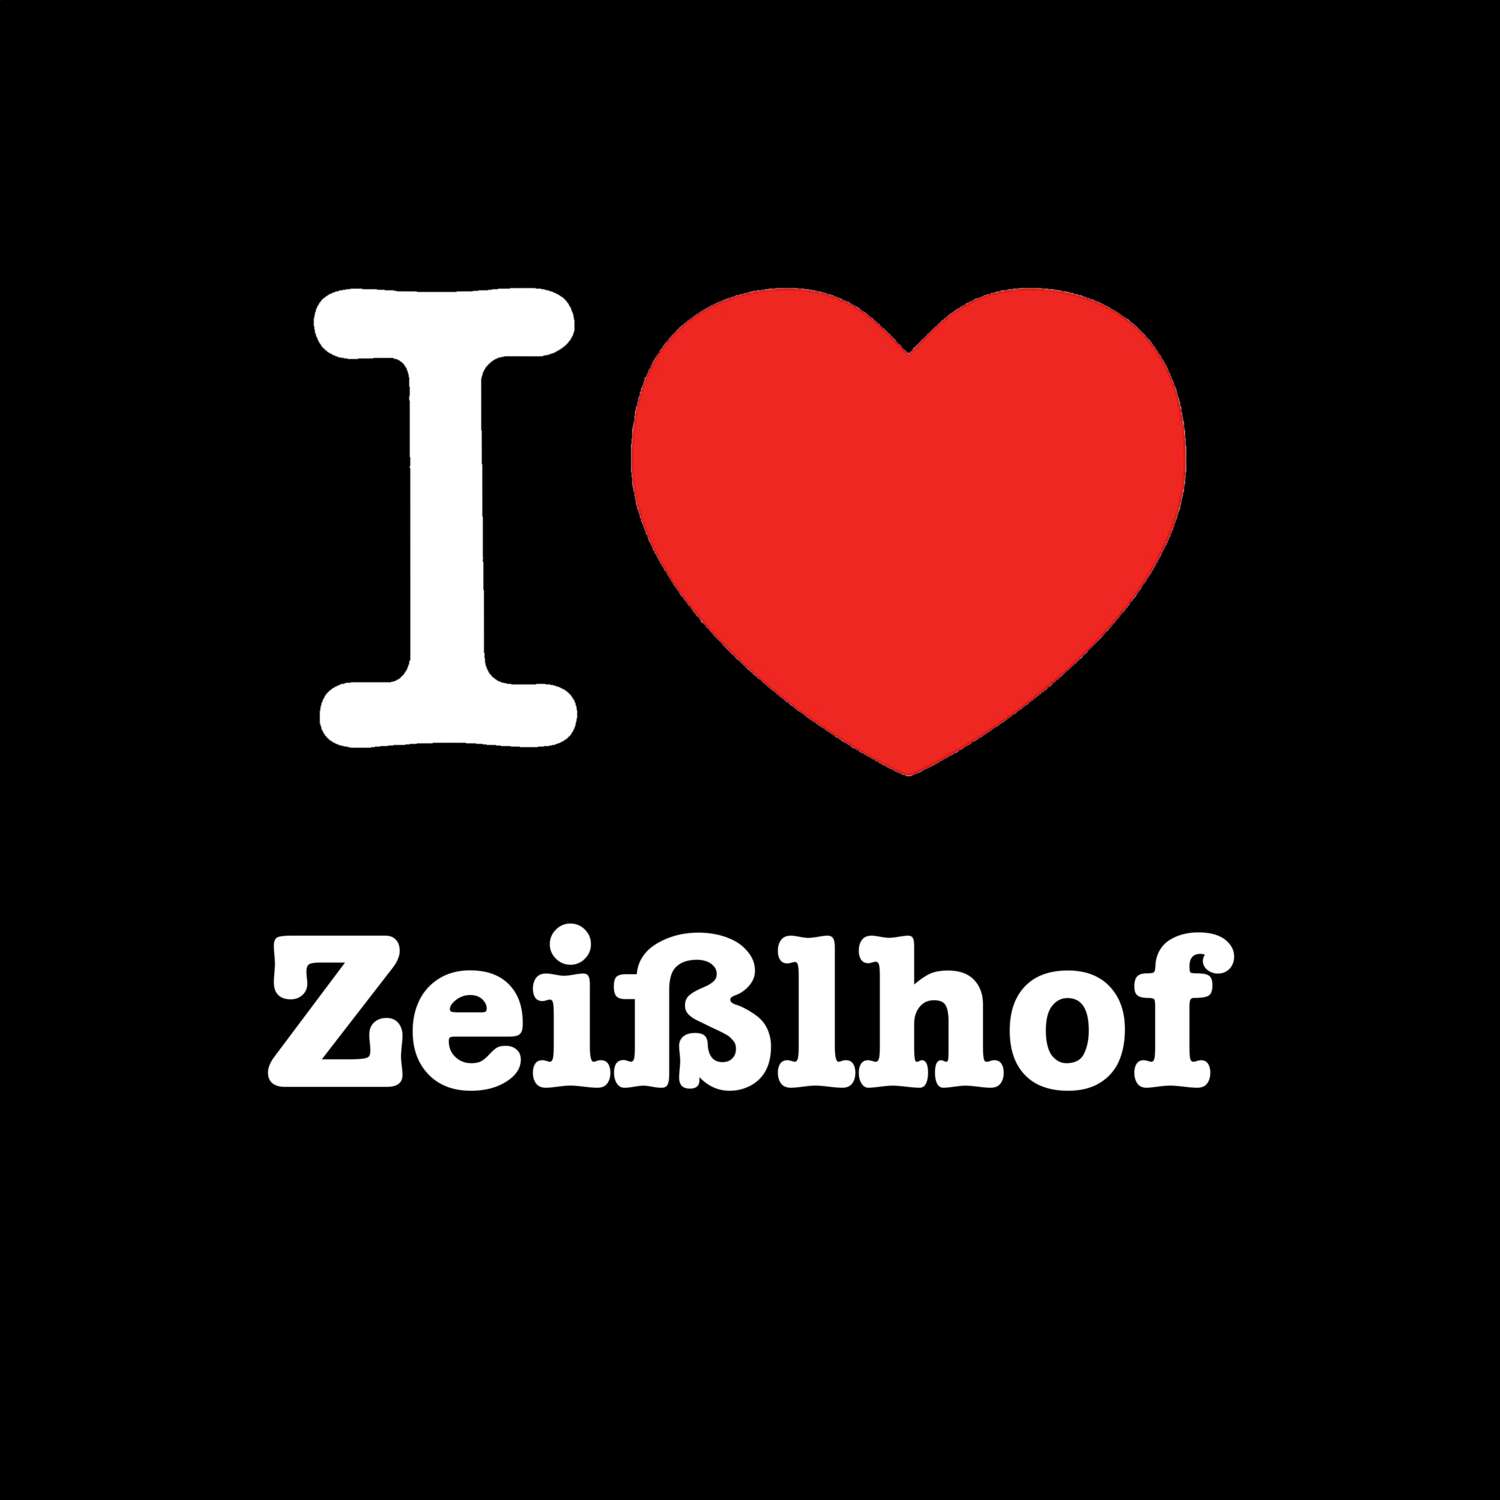 Zeißlhof T-Shirt »I love«